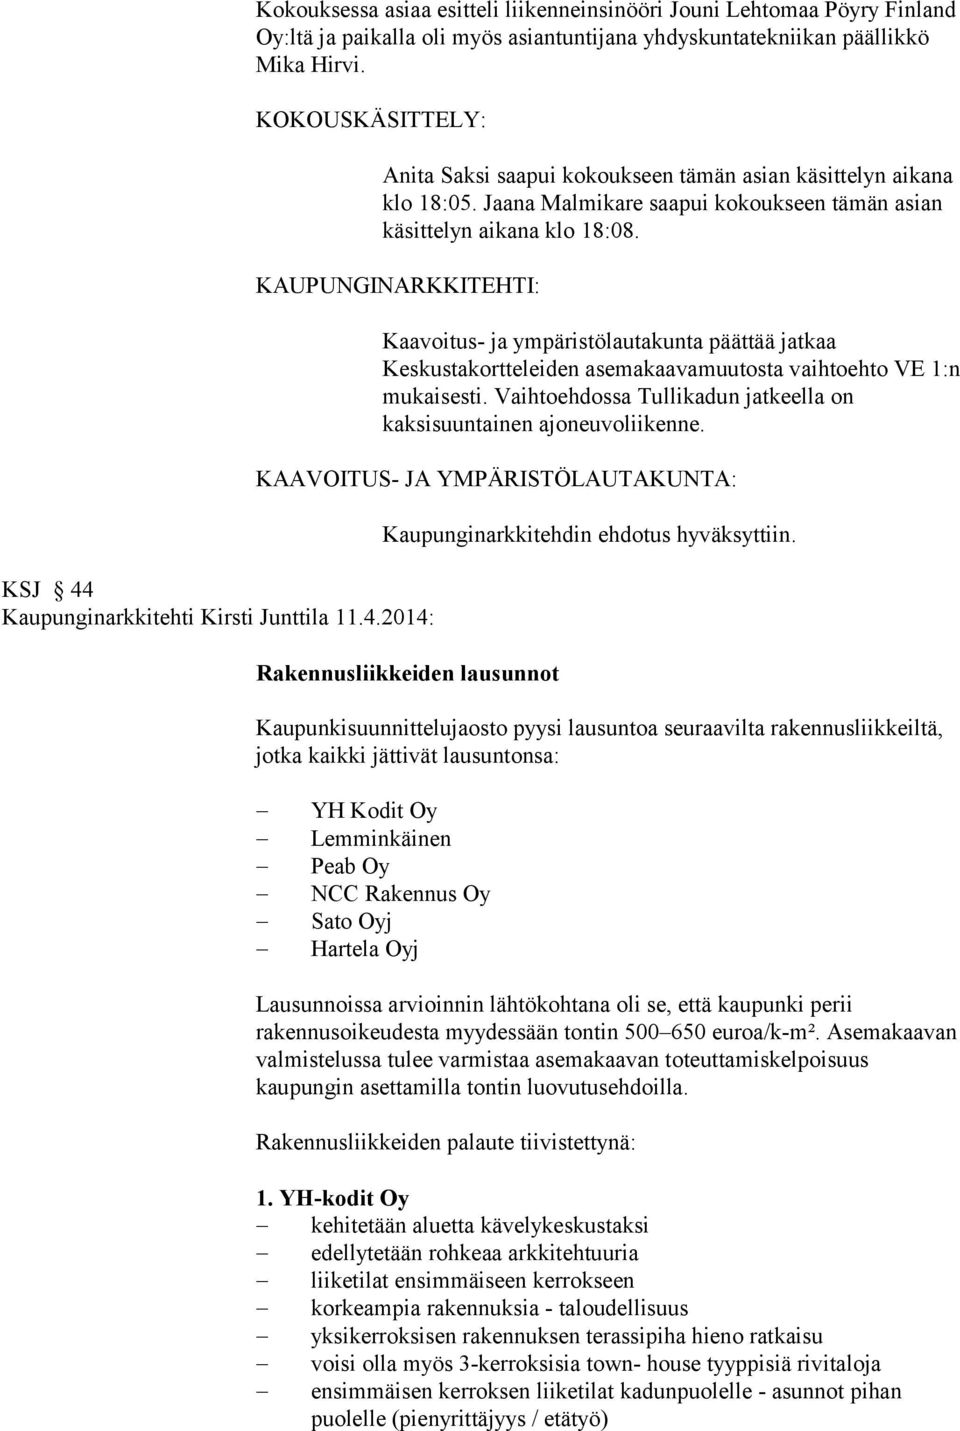 KAUPUNGINARKKITEHTI: KSJ 44 Kaupunginarkkitehti Kirsti Junttila 11.4.2014: Kaavoitus- ja ympäristölautakunta päättää jatkaa Keskustakortteleiden asemakaavamuutosta vaihtoehto VE 1:n mukaisesti.